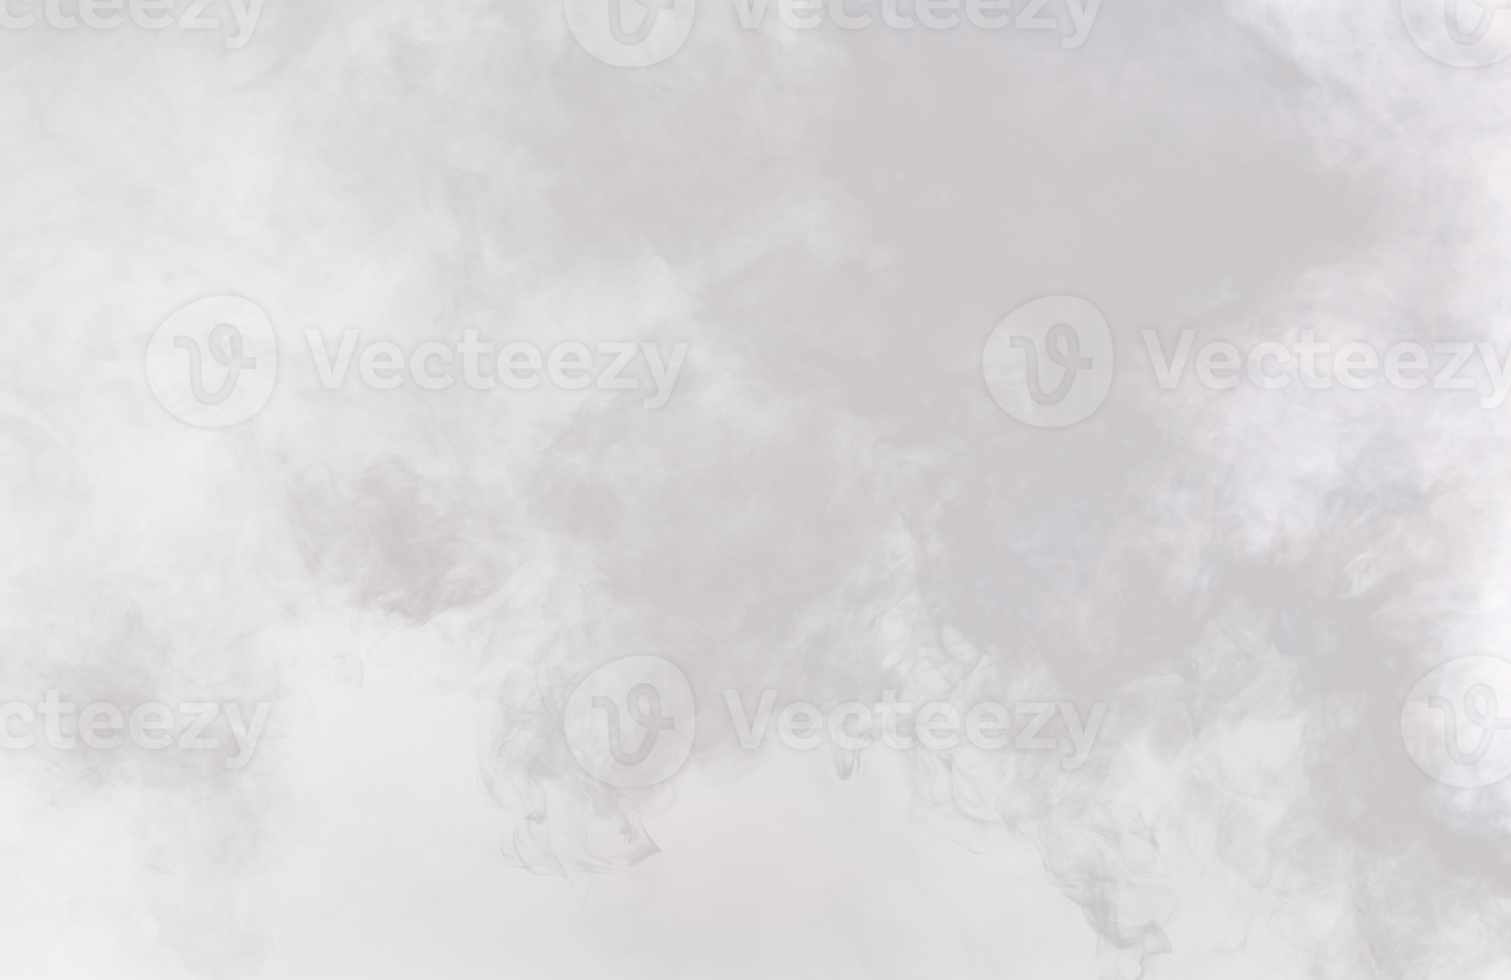 bocanadas densas y esponjosas de humo blanco y niebla sobre fondo png transparente, nubes de humo abstractas, movimiento borroso fuera de foco. golpes de humo de la máquina mosca de hielo seco revoloteando en el aire, textura de efecto